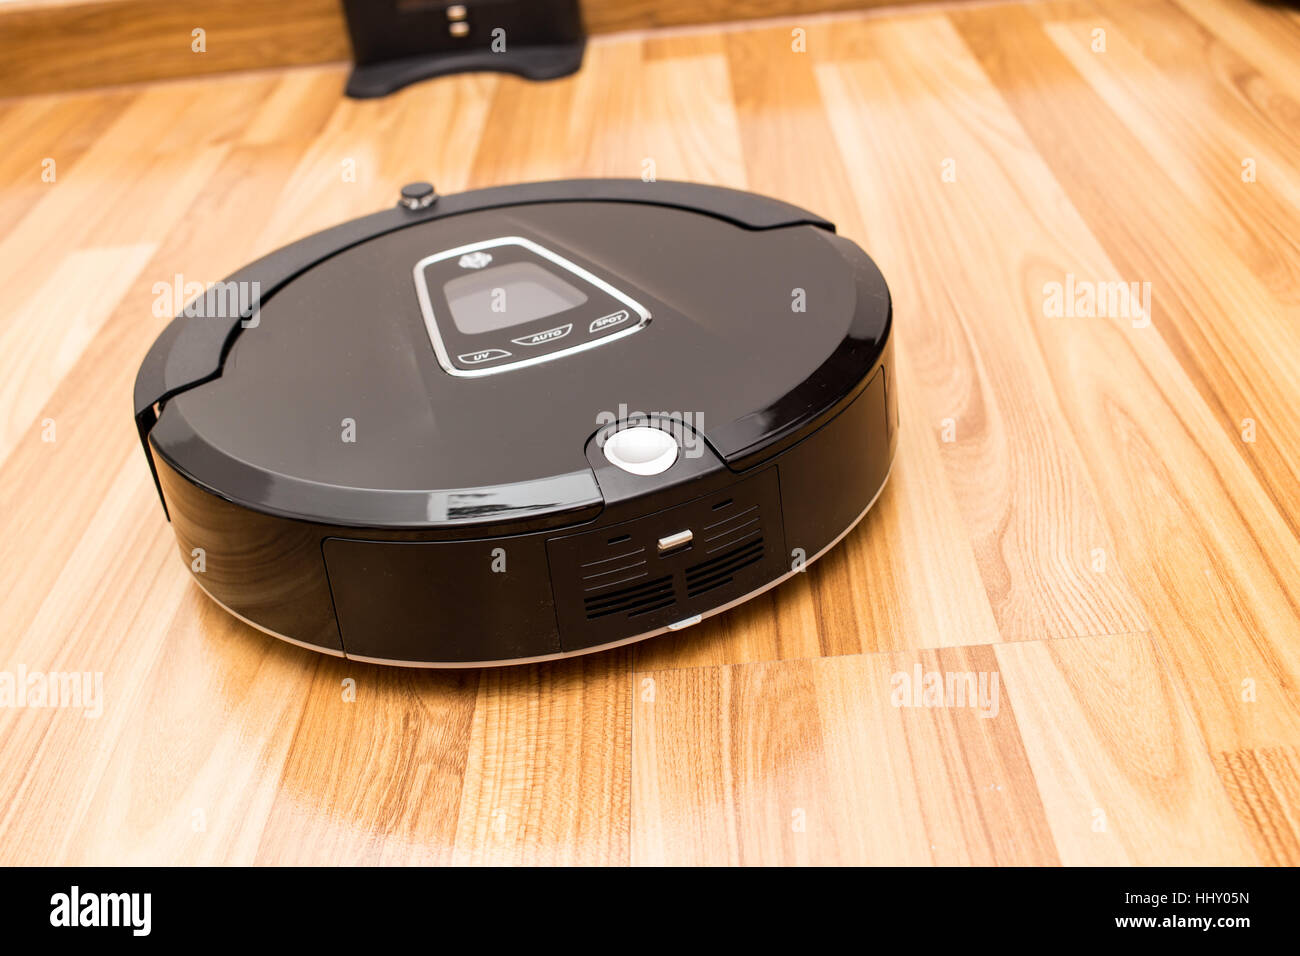 Aspirateur Robot sur parquet bois, Smart vide, nouvelle technologie d'automatiser les tâches ménagères. Banque D'Images